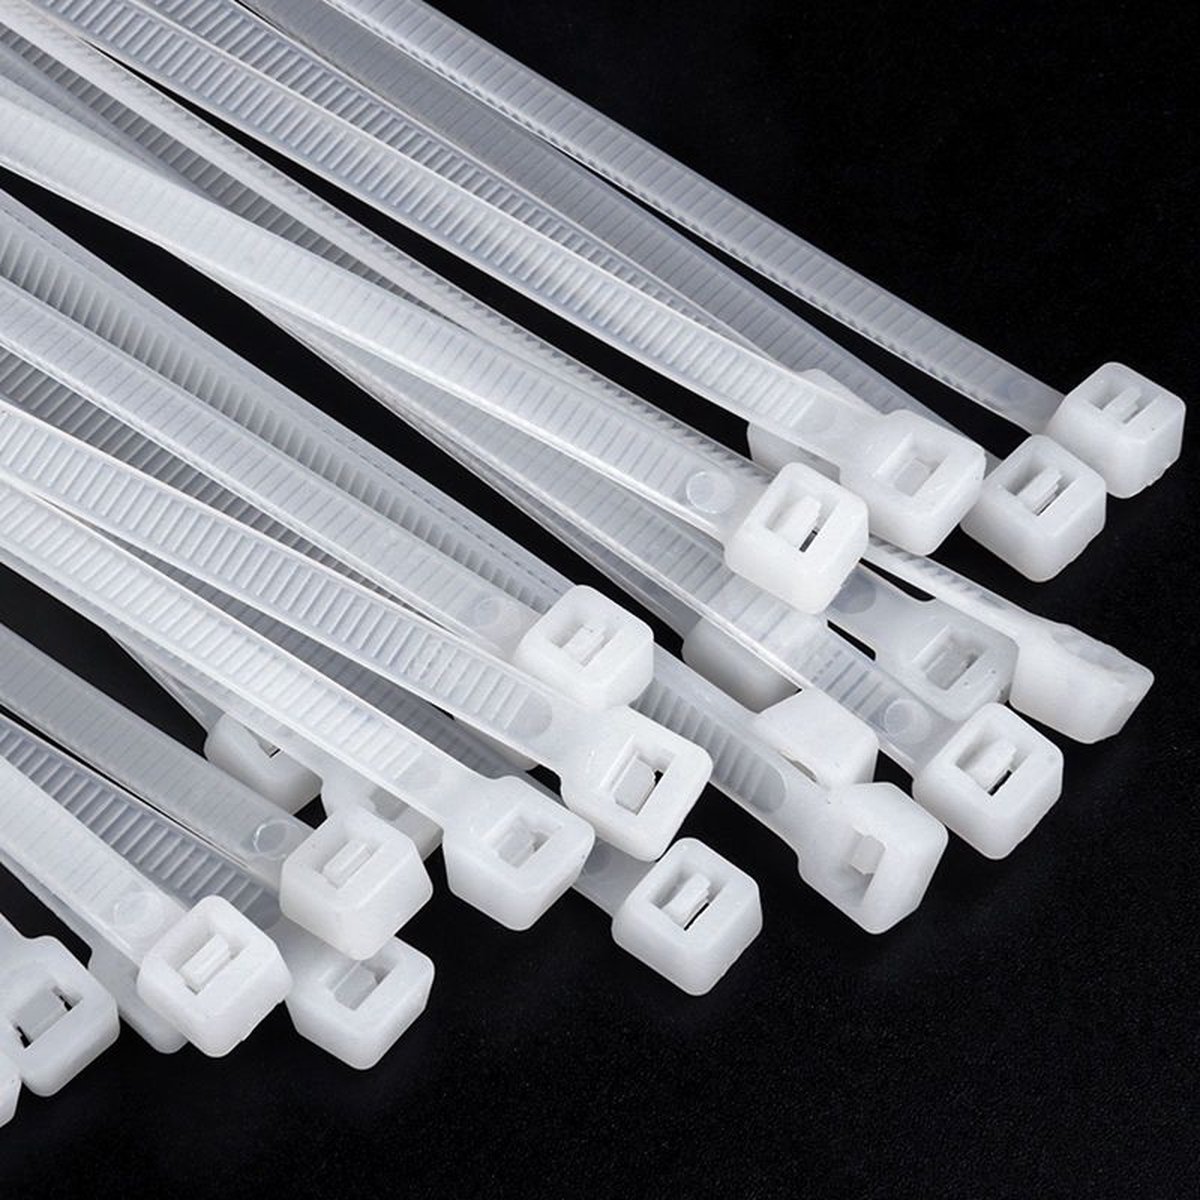 Kabelbinders - Tie wraps - Tie Ribs - cabel ties -3.5mm*20cm - 10 stuks - wit